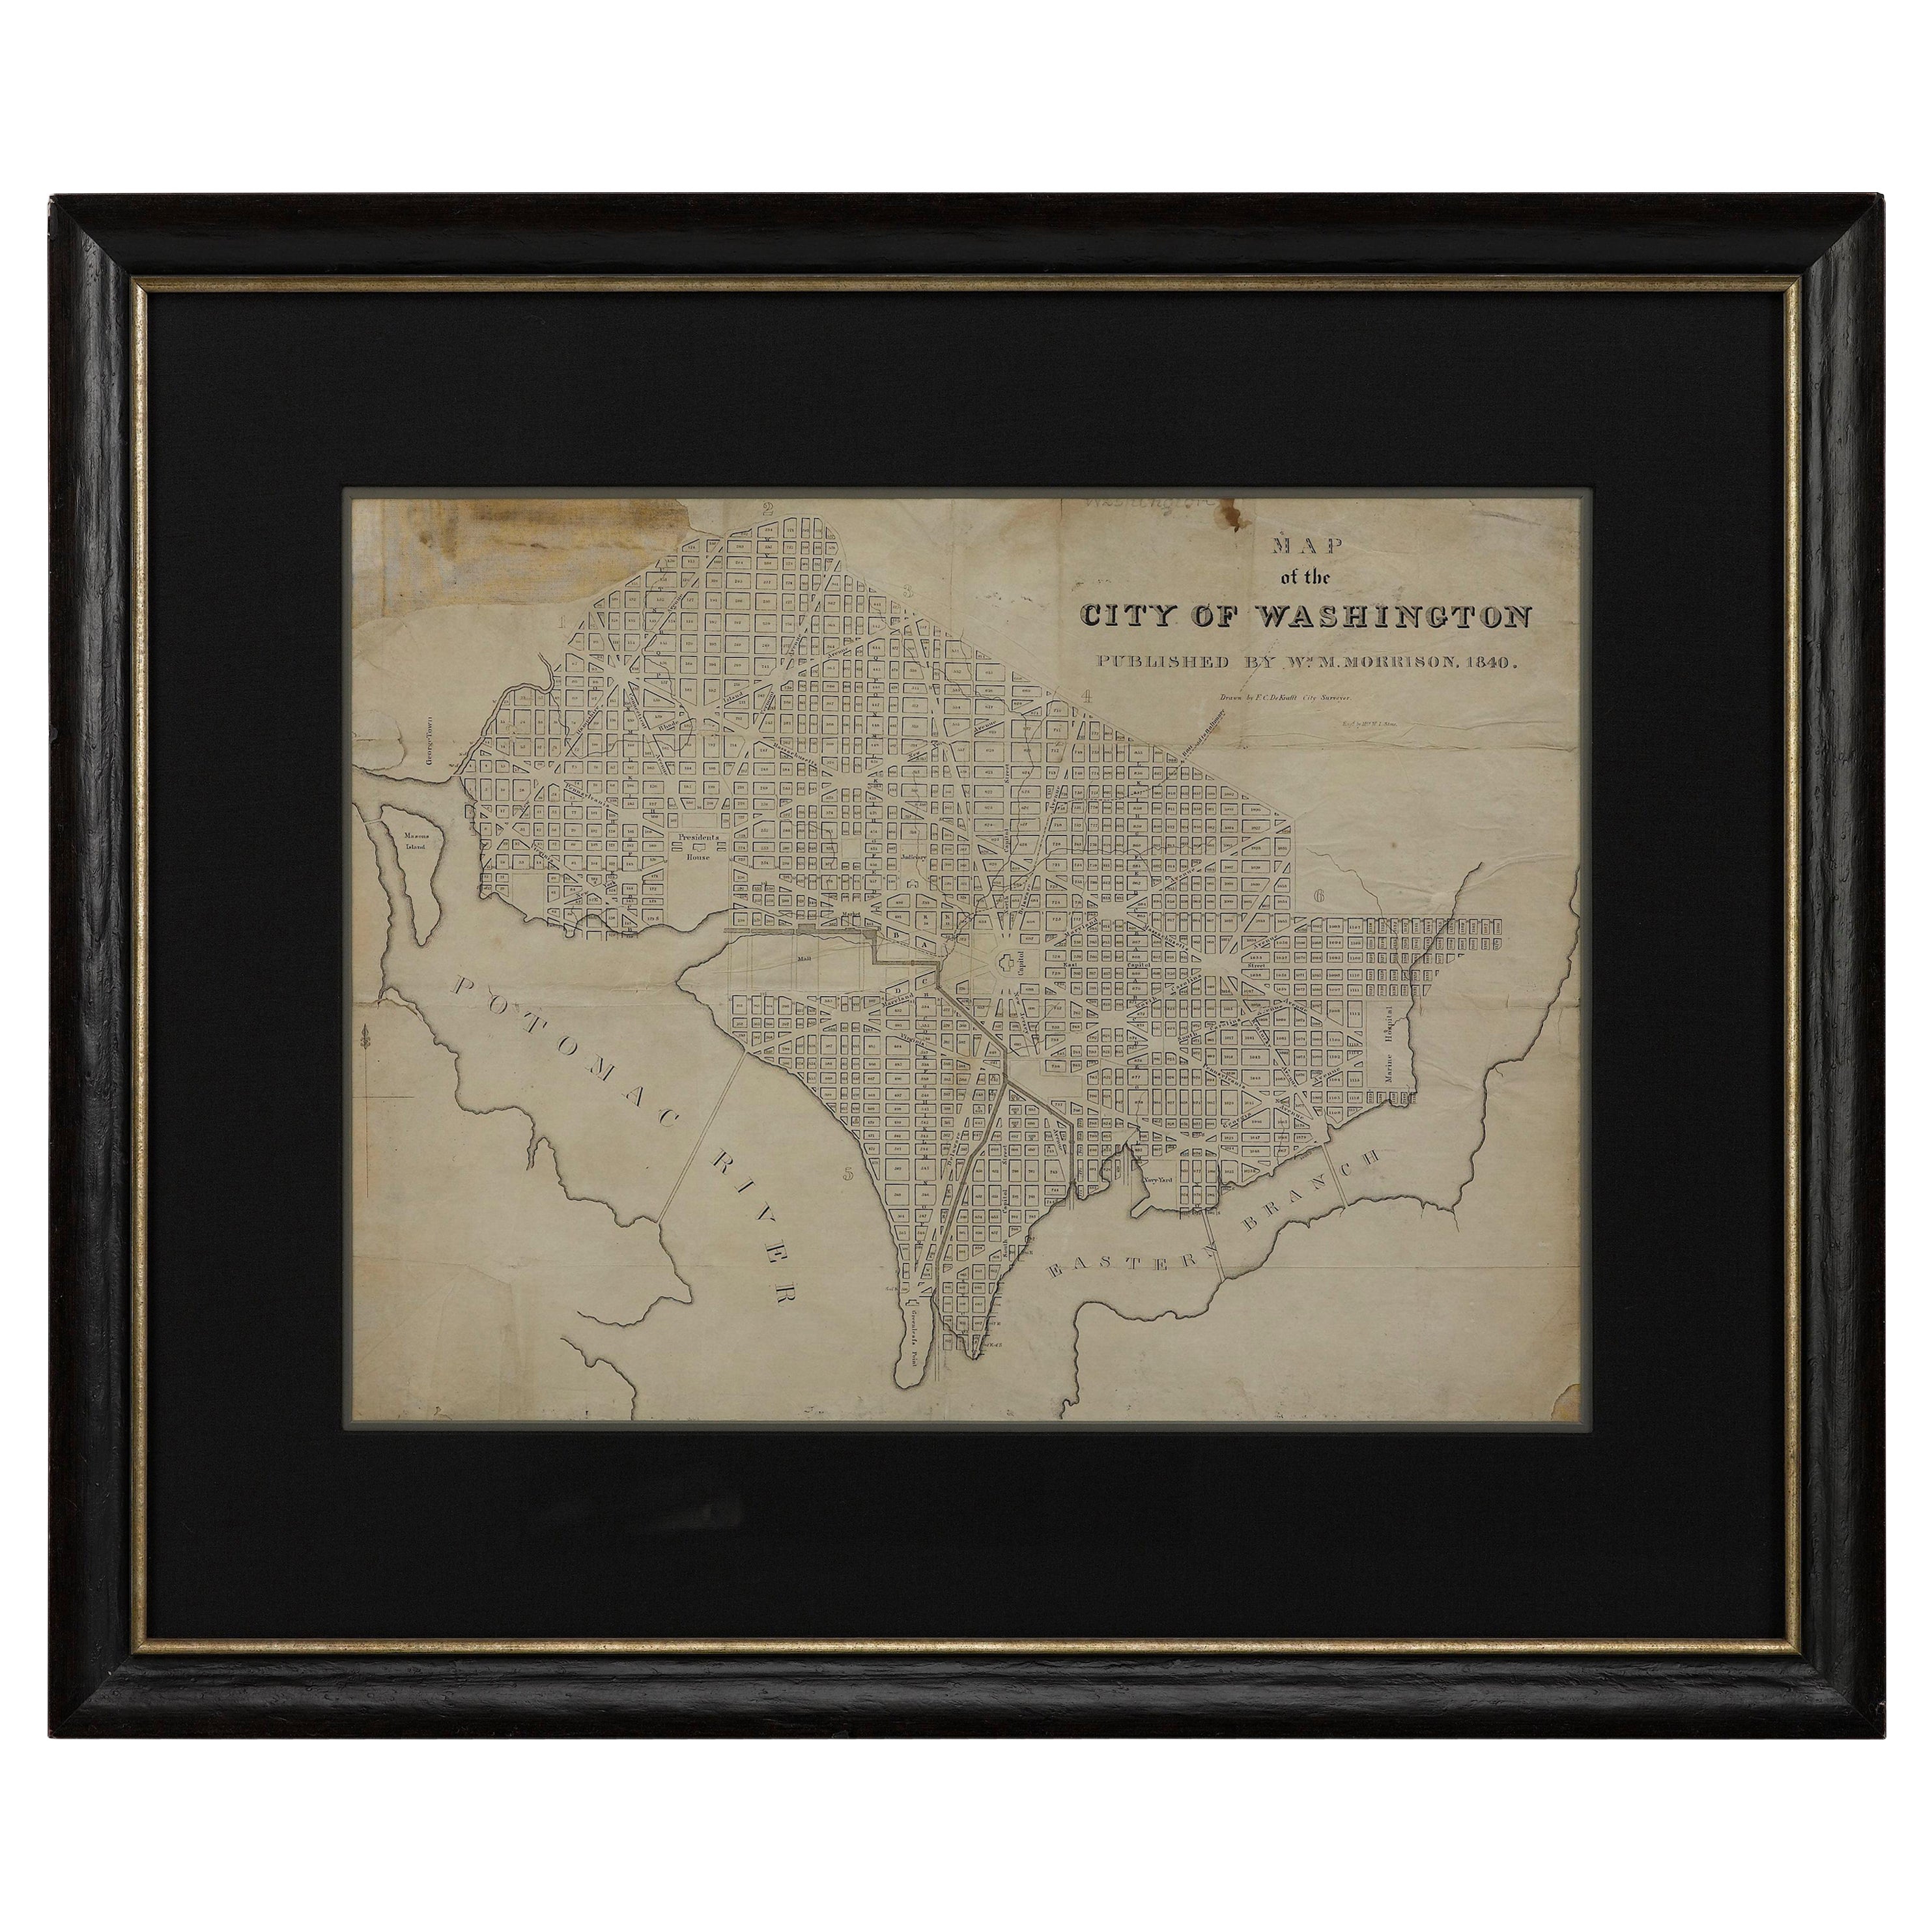 Map of the City of Washington aus dem Jahr 1840, herausgegeben von William M. Morrison im Angebot